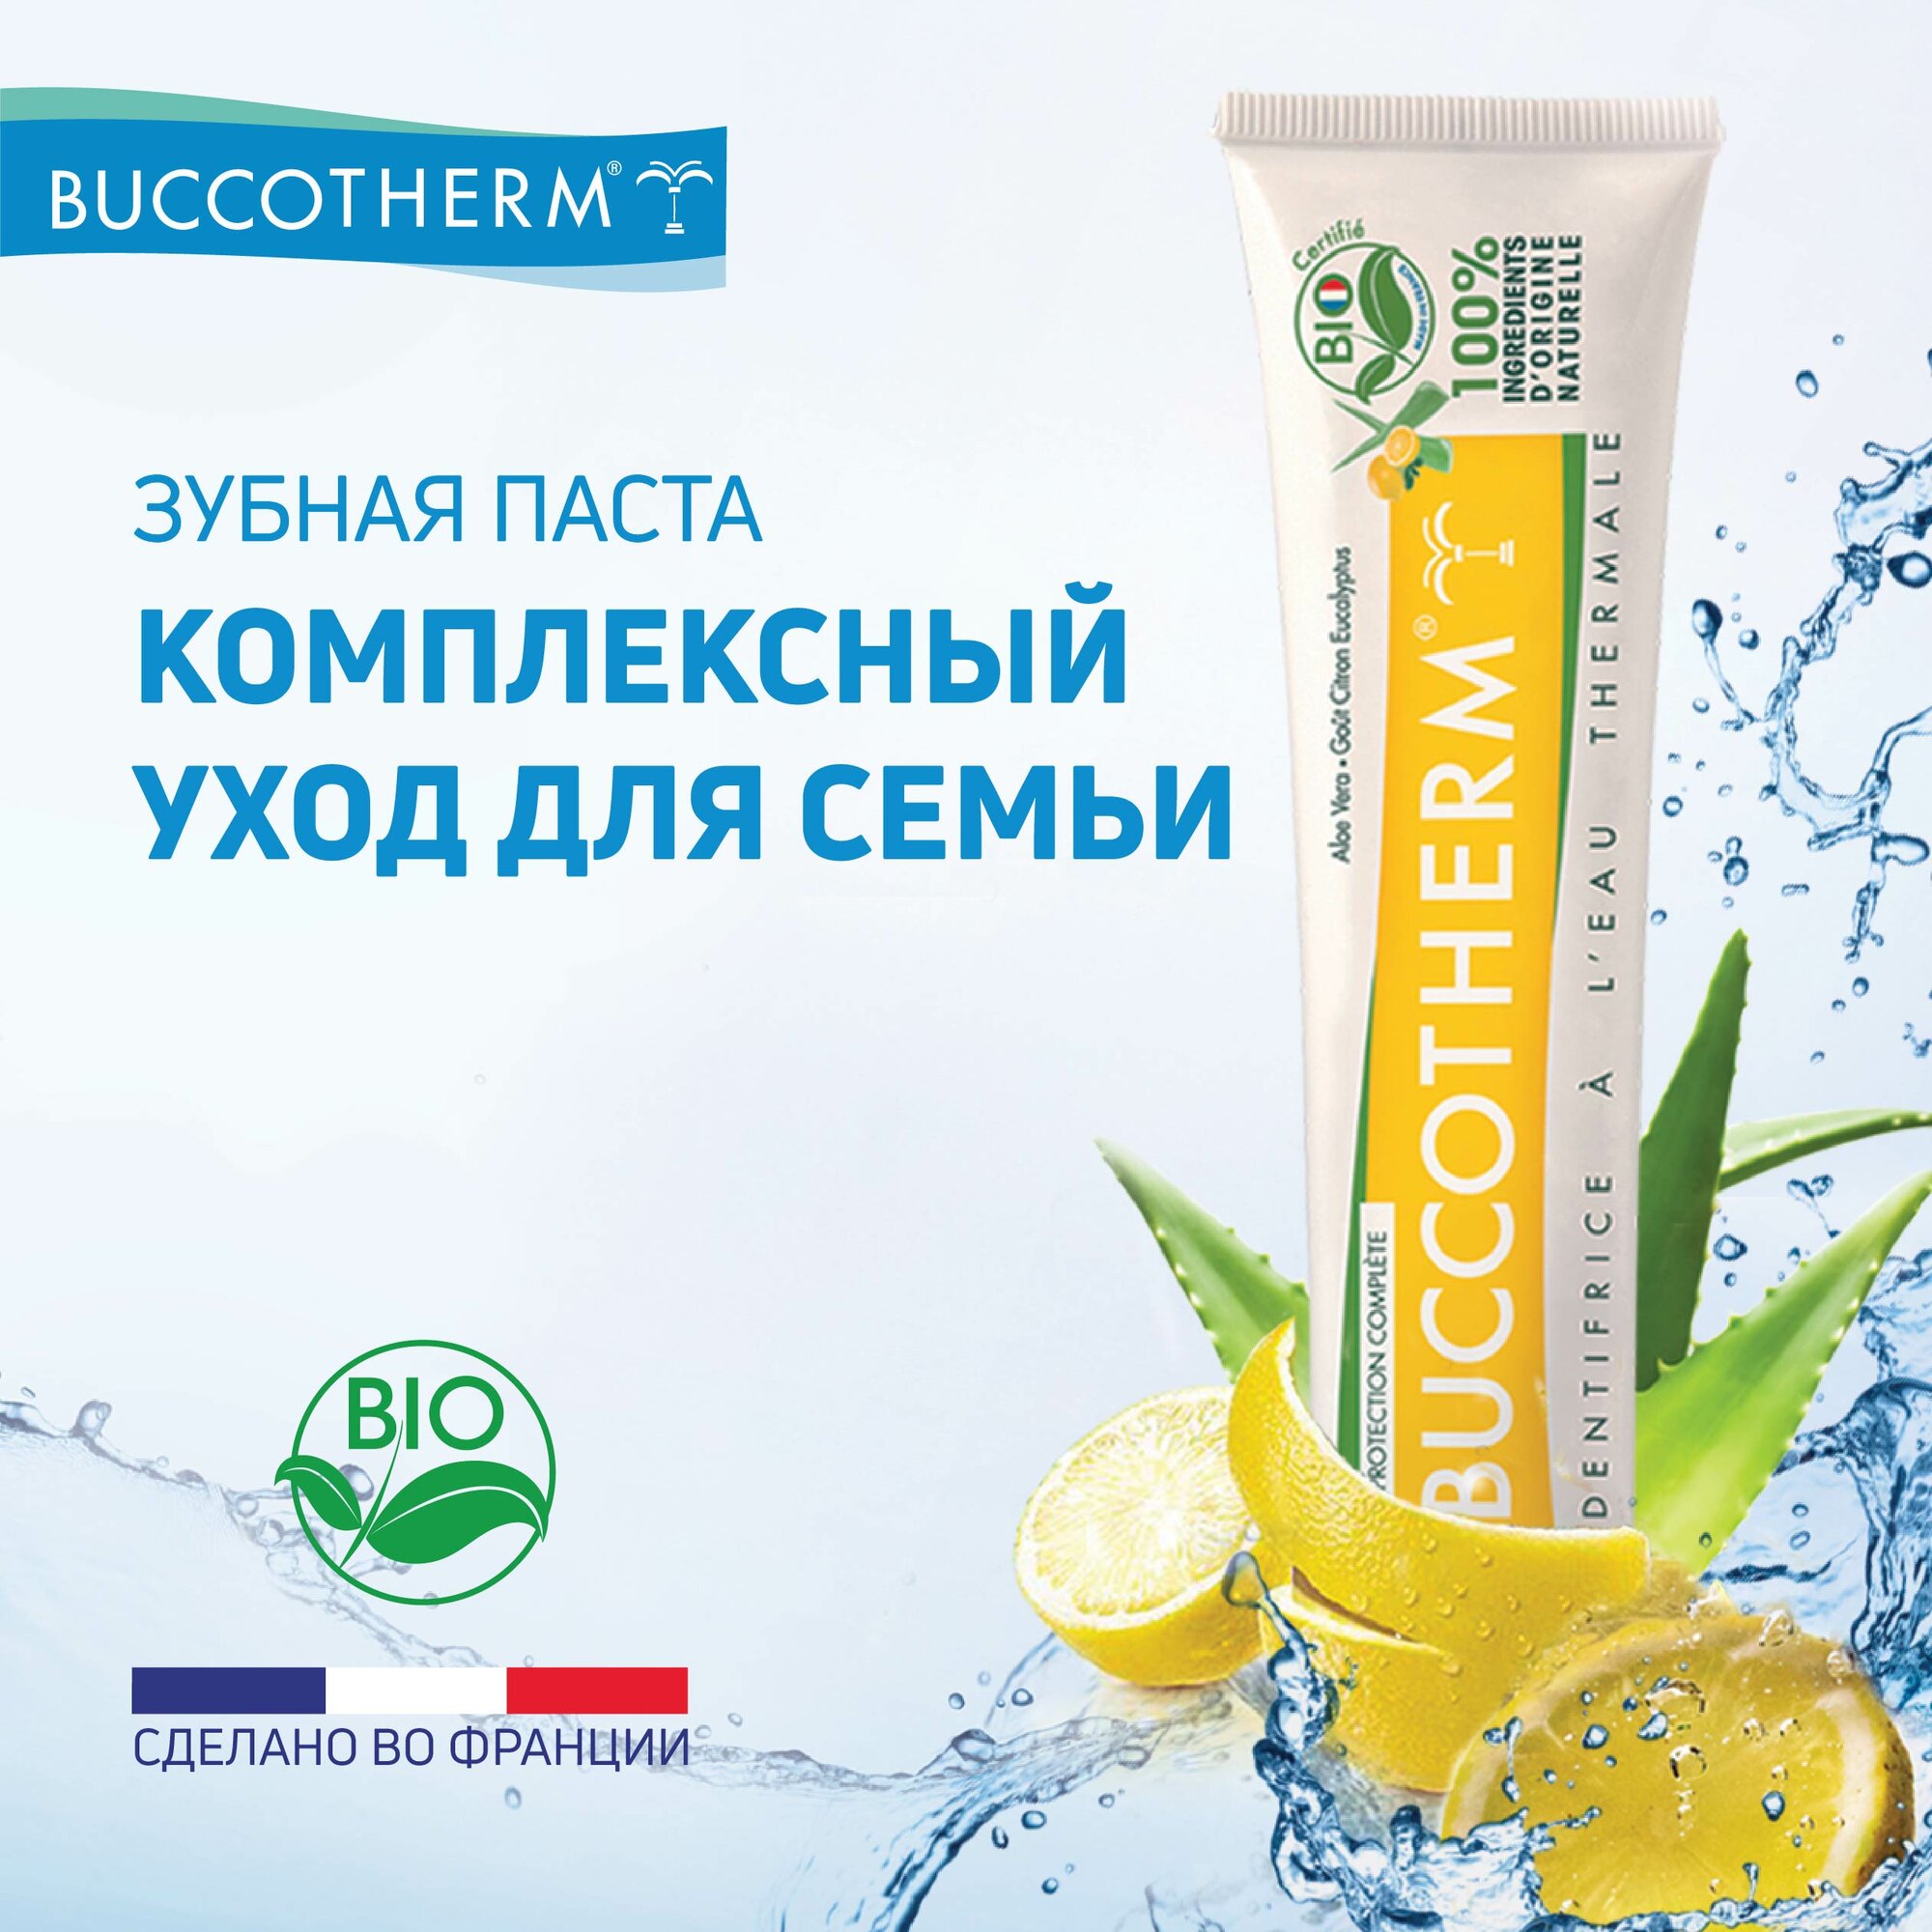 BUCCOTHERM Зубная паста Комплексная защита, вкус лимон c термальной водой, 75мл.